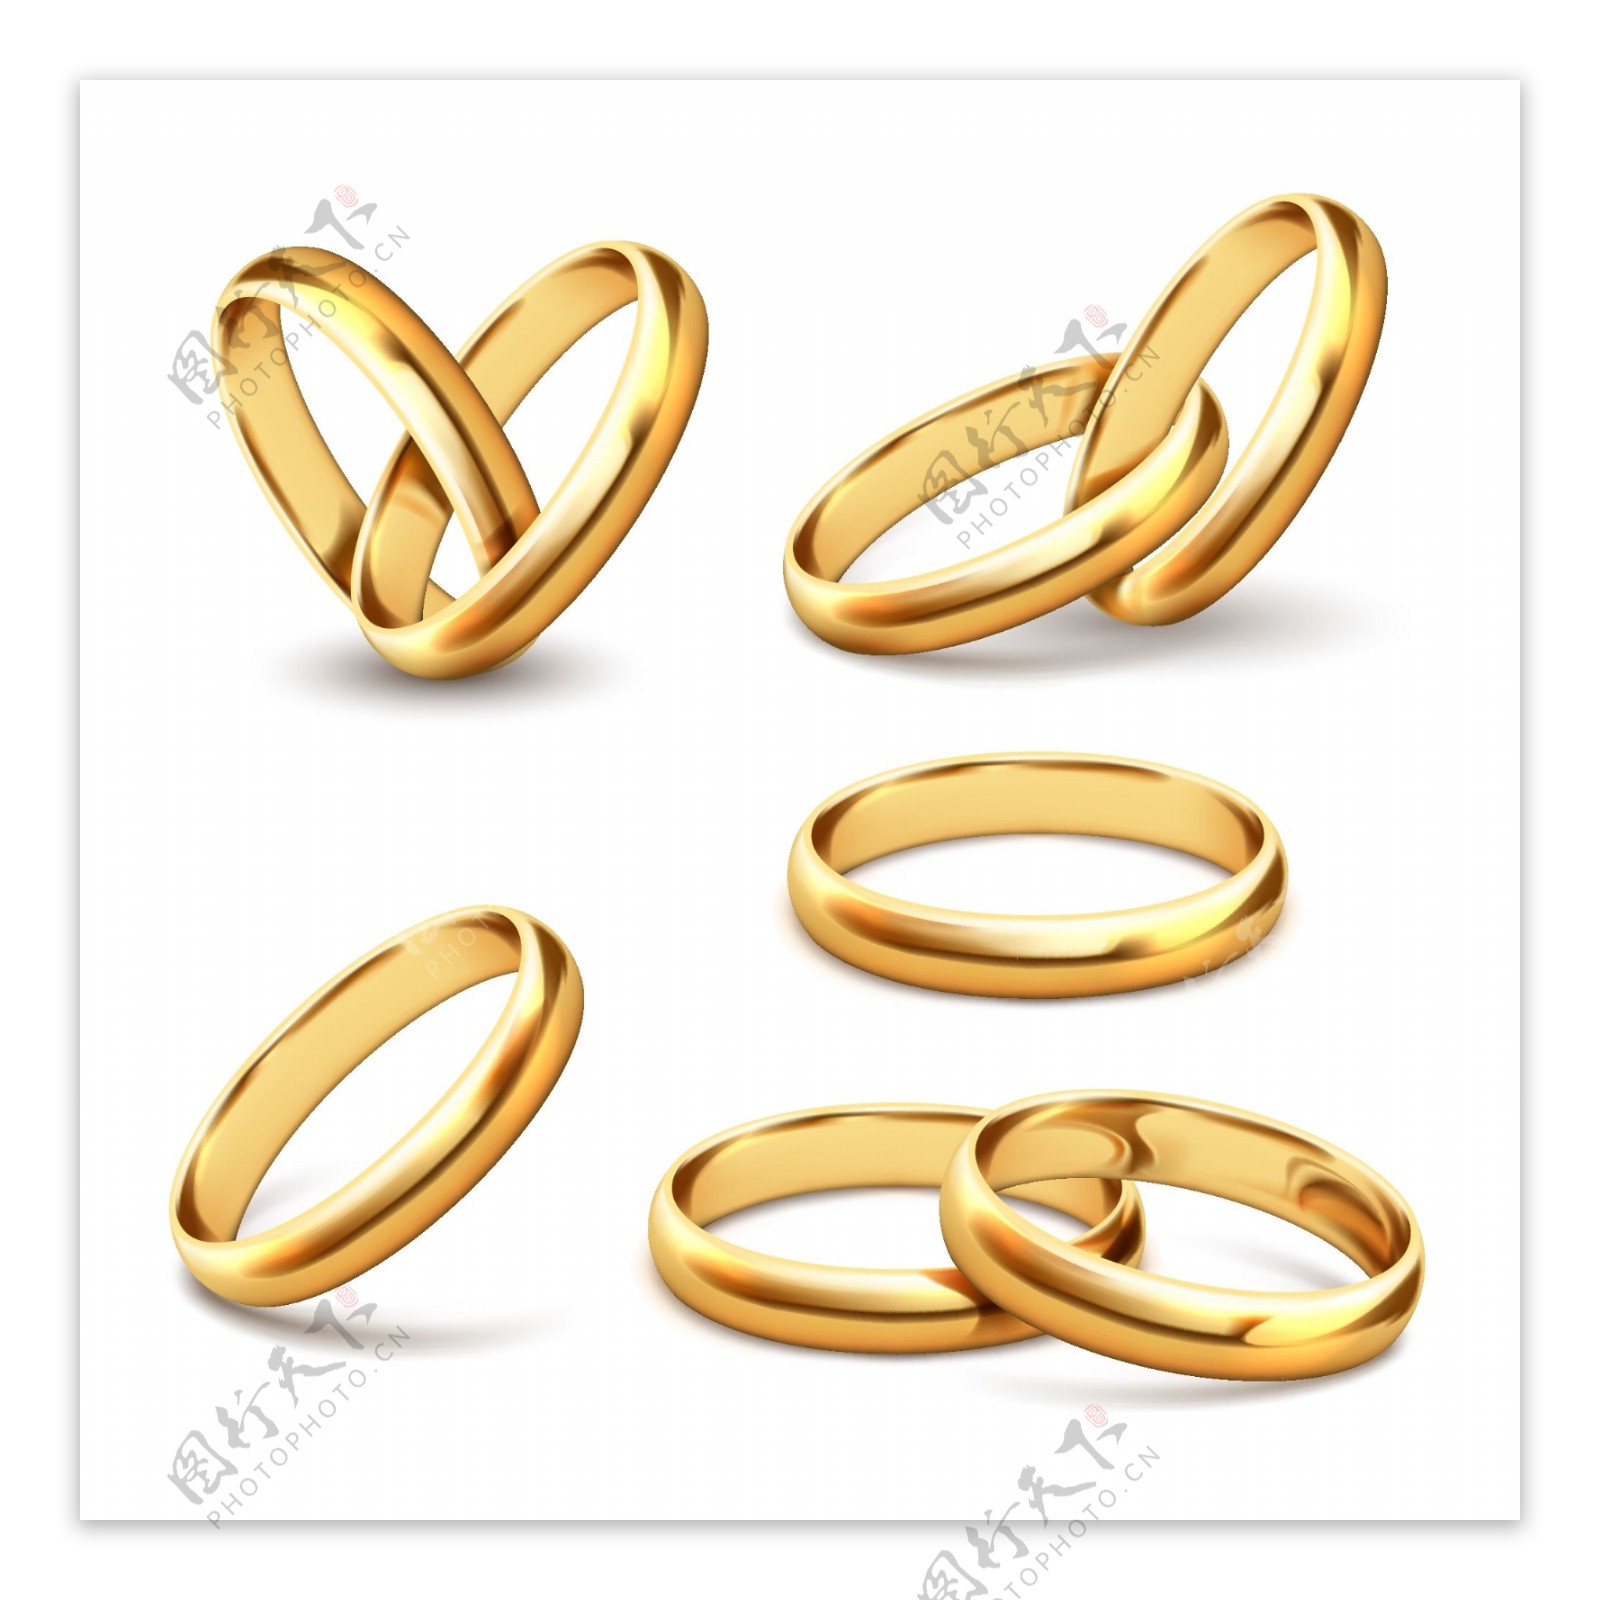 5款质感金色戒指设计矢量素材